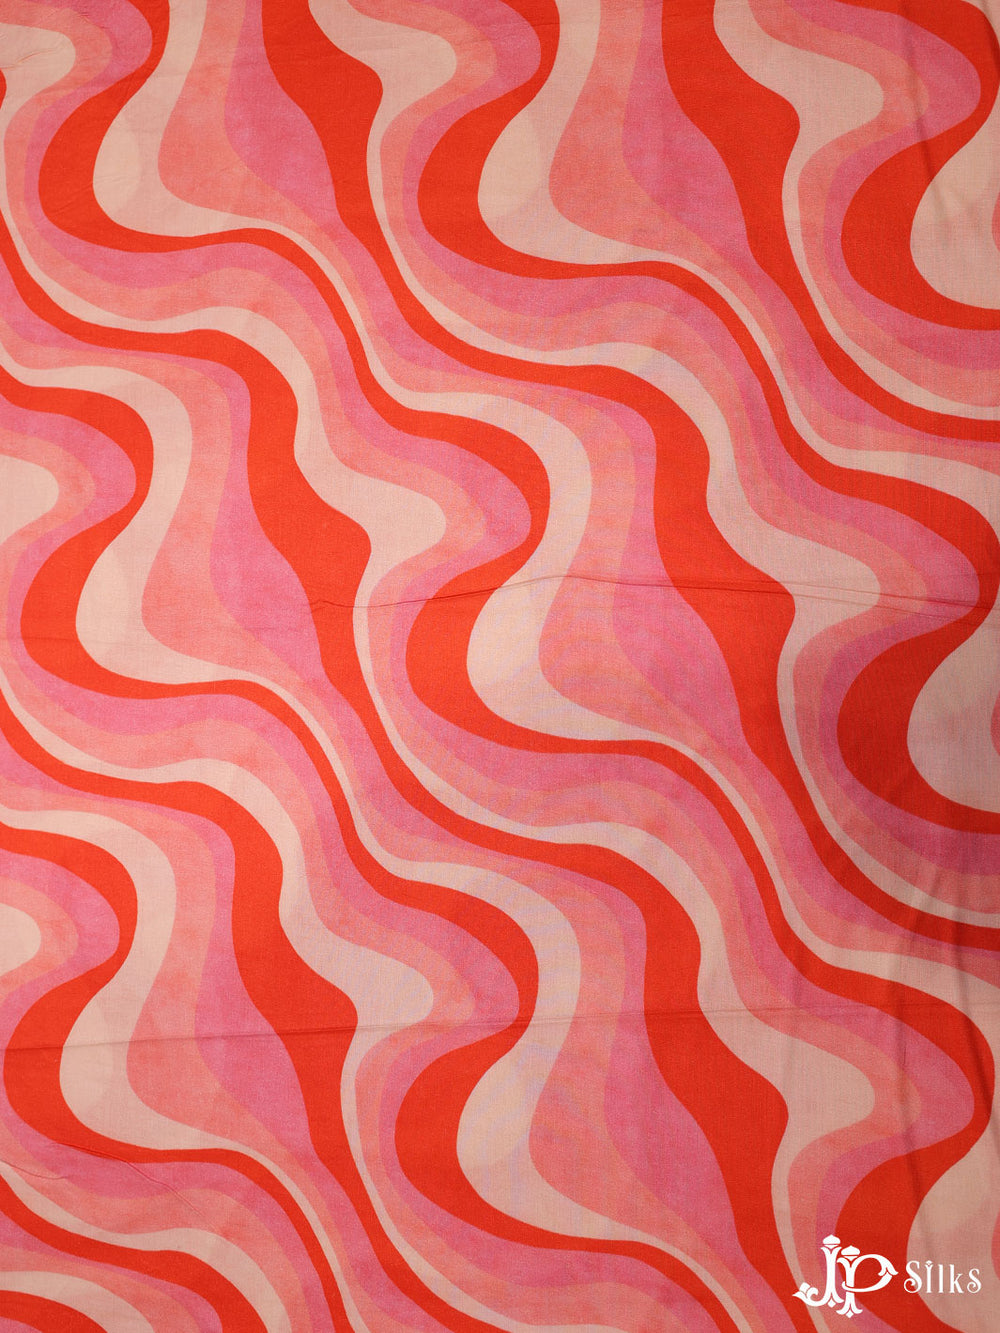 Multicolor Retro Swirl Cotton Fabric - E4026 - View 1